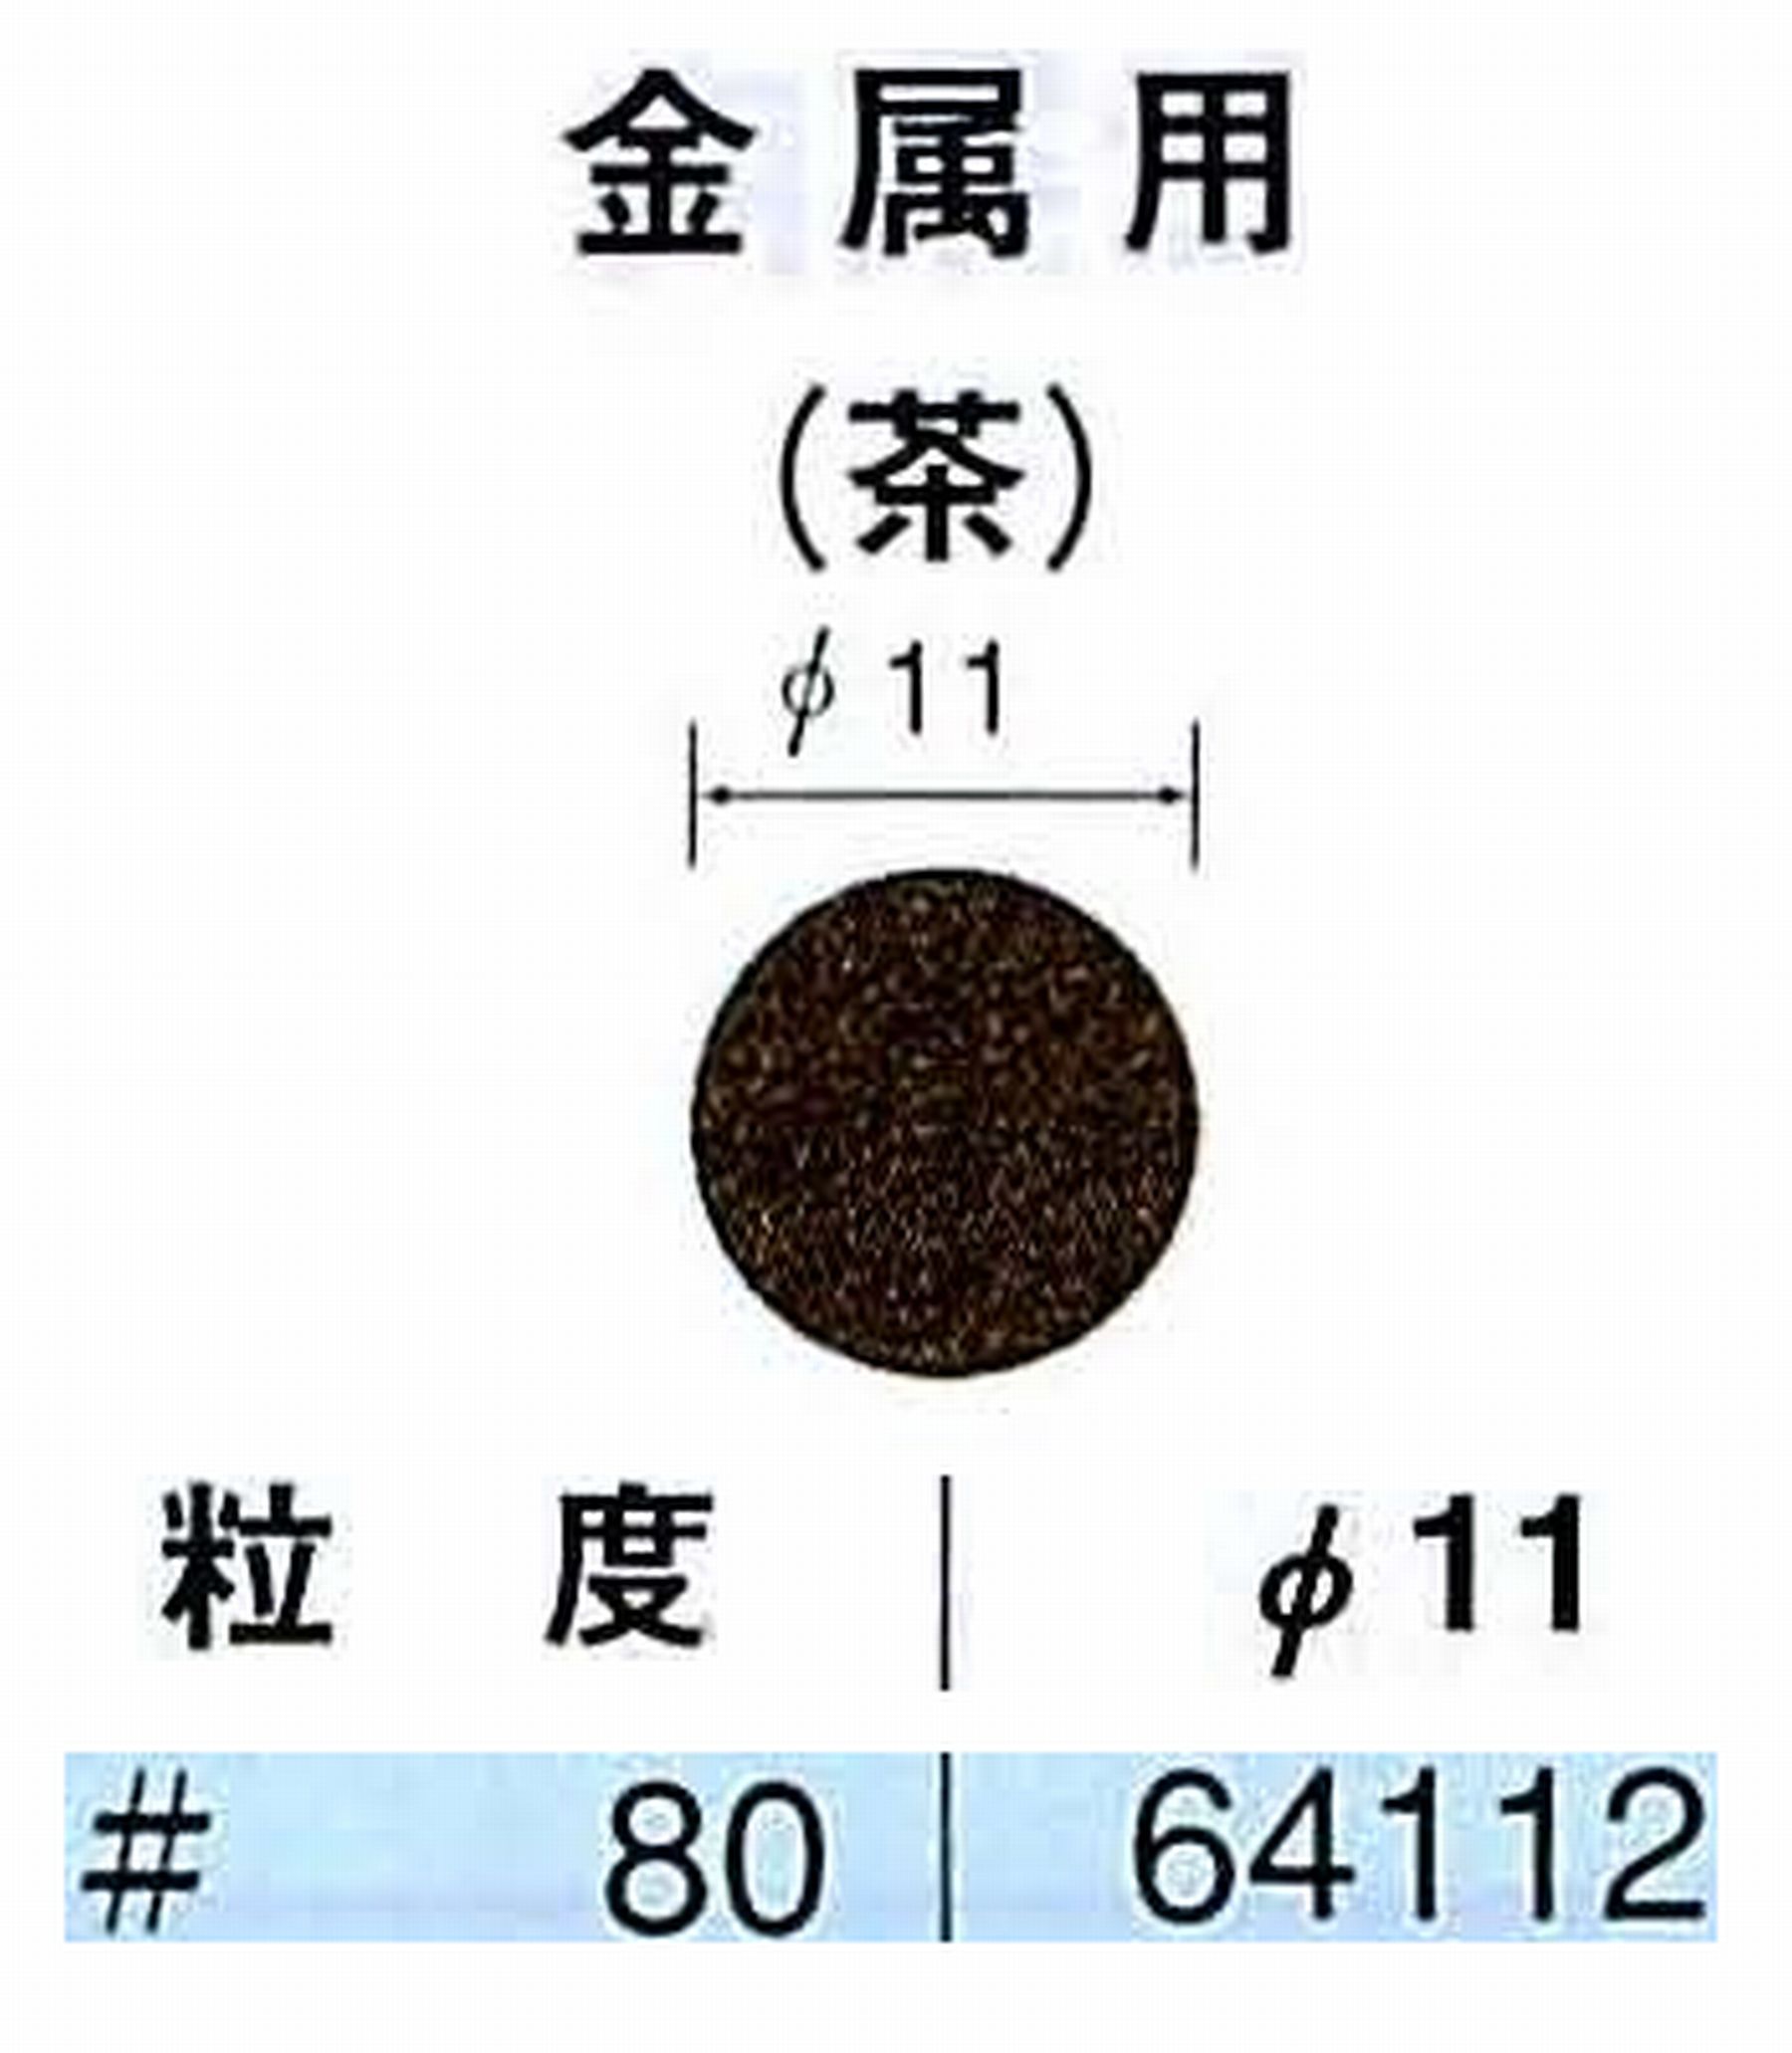 ナカニシ/NAKANISHI アングルグラインダ(電動・エアー) アングルアタッチメント専用工具 サンドペーパーディスク(布基材タイプ)裏面のり処理 64112